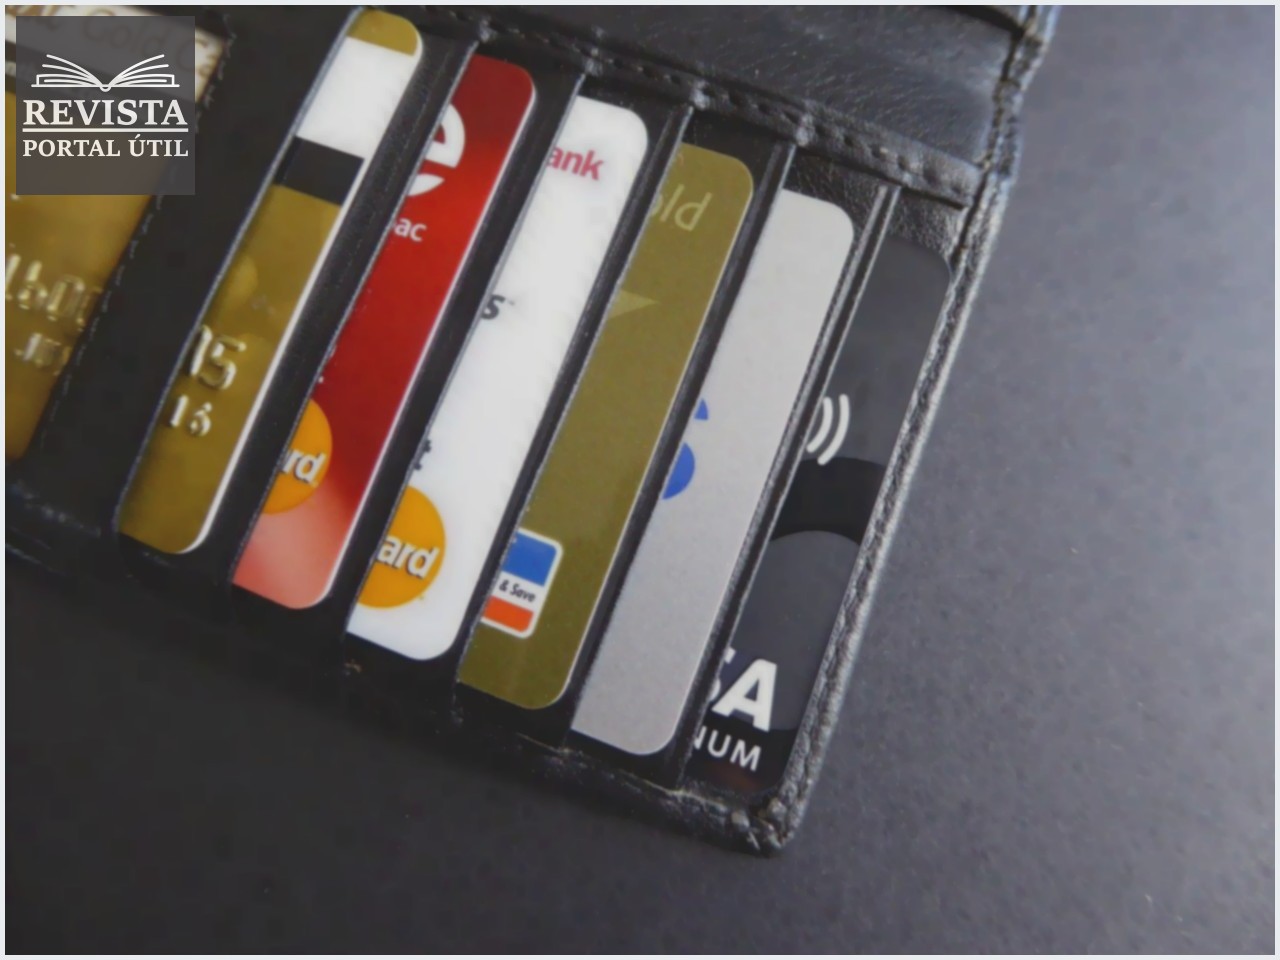 Cartão de crédito consignado: tudo o que você precisa saber